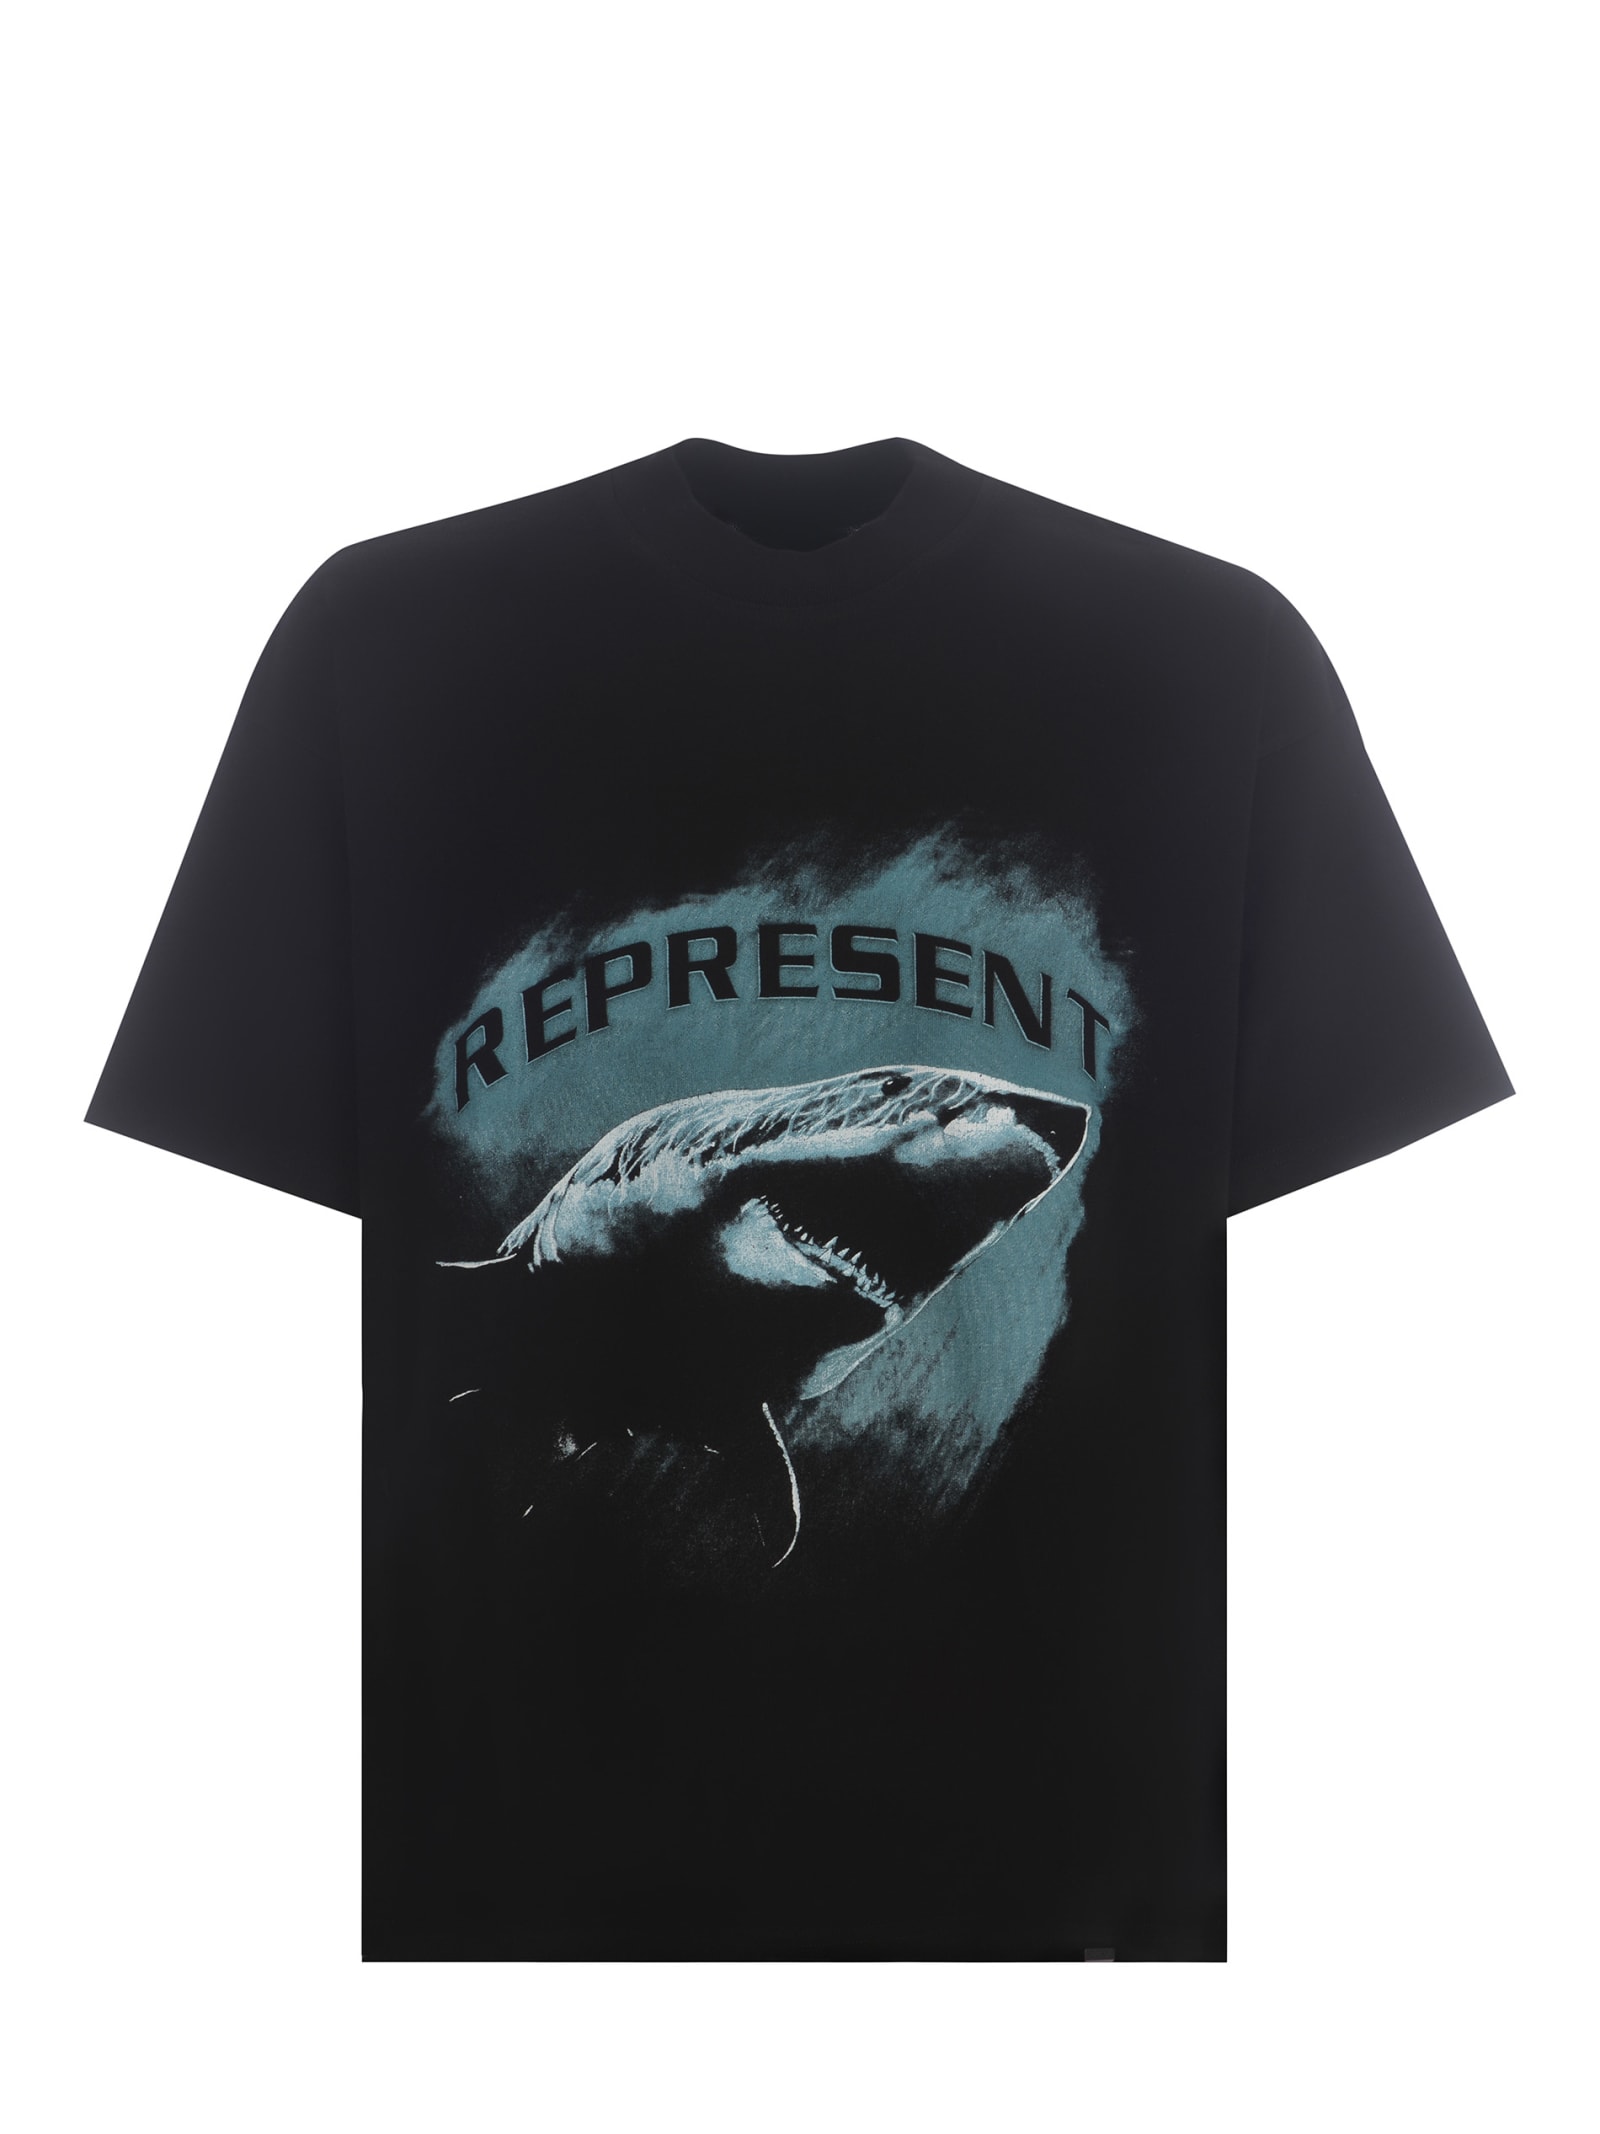 T-shirt Represent shark In Cotton